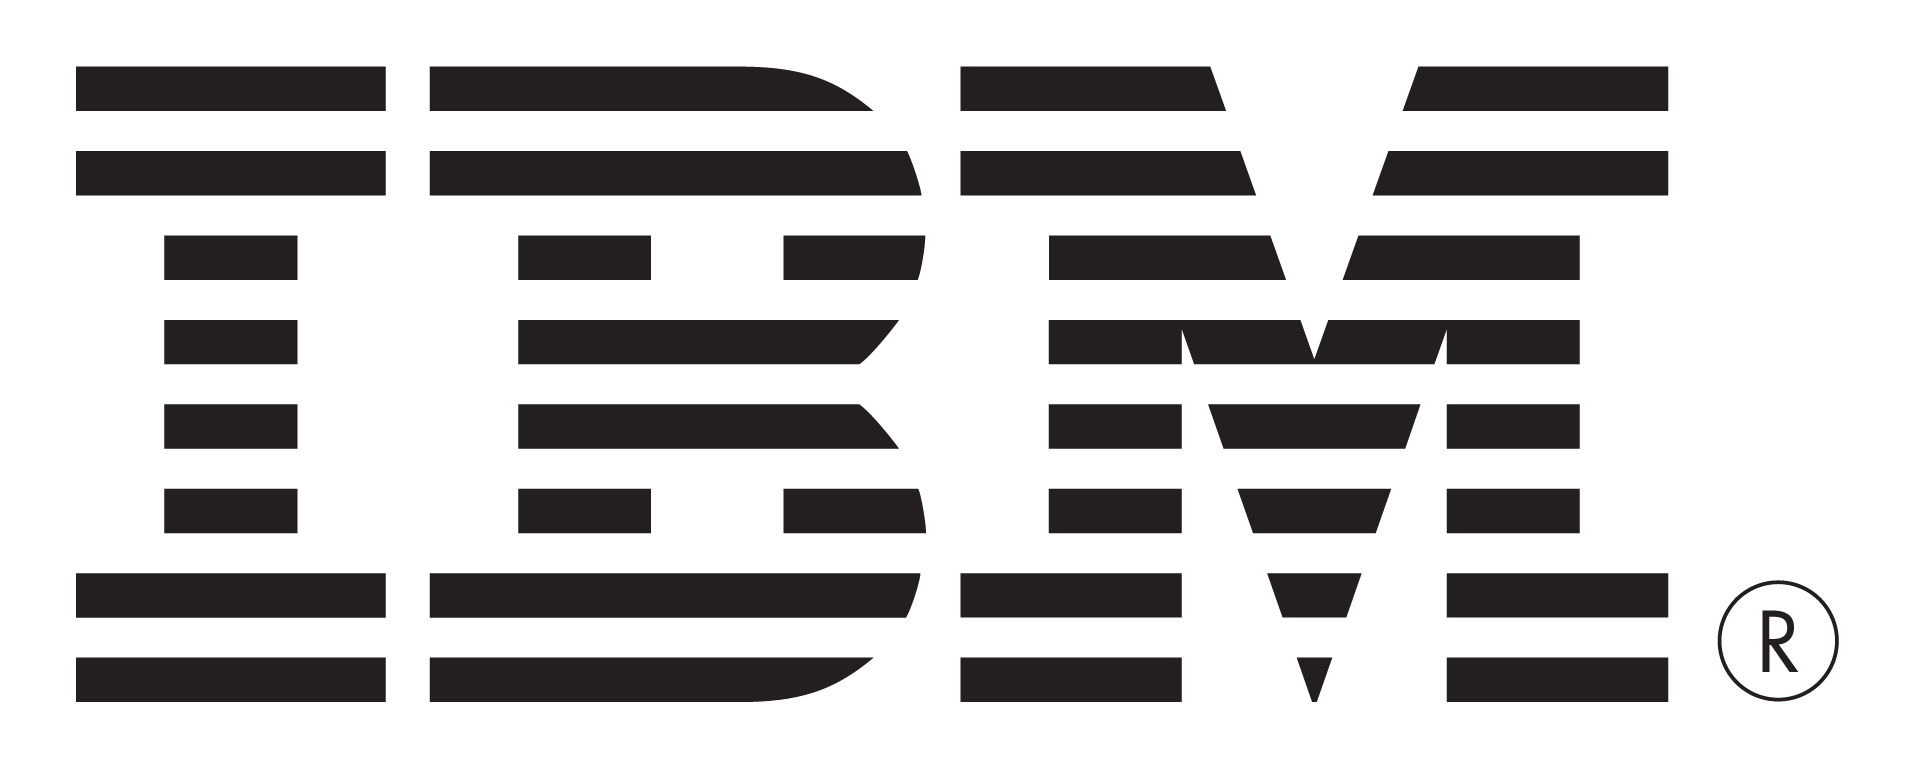 IBM Black Logo - Logo Ibm PNG Transparent Logo Ibm.PNG Images. | PlusPNG